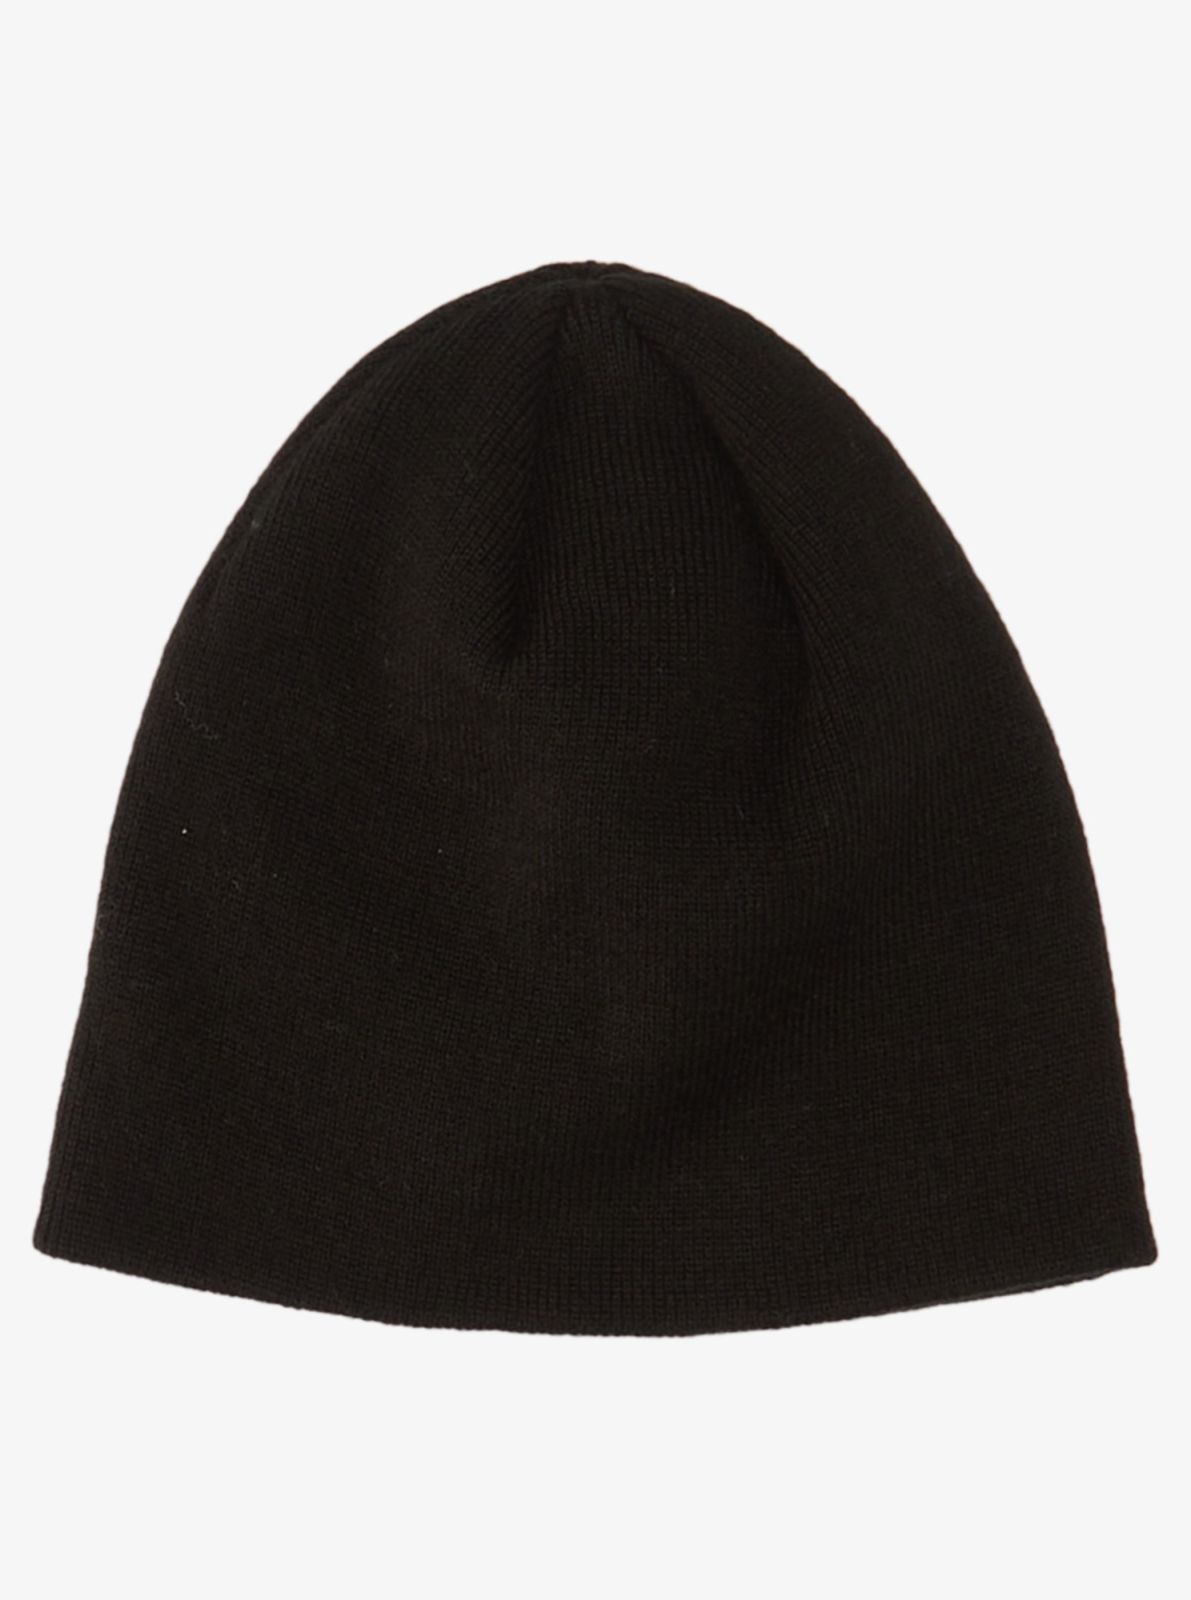  כובע גרב עם לוגו / גברים של QUIKSILVER